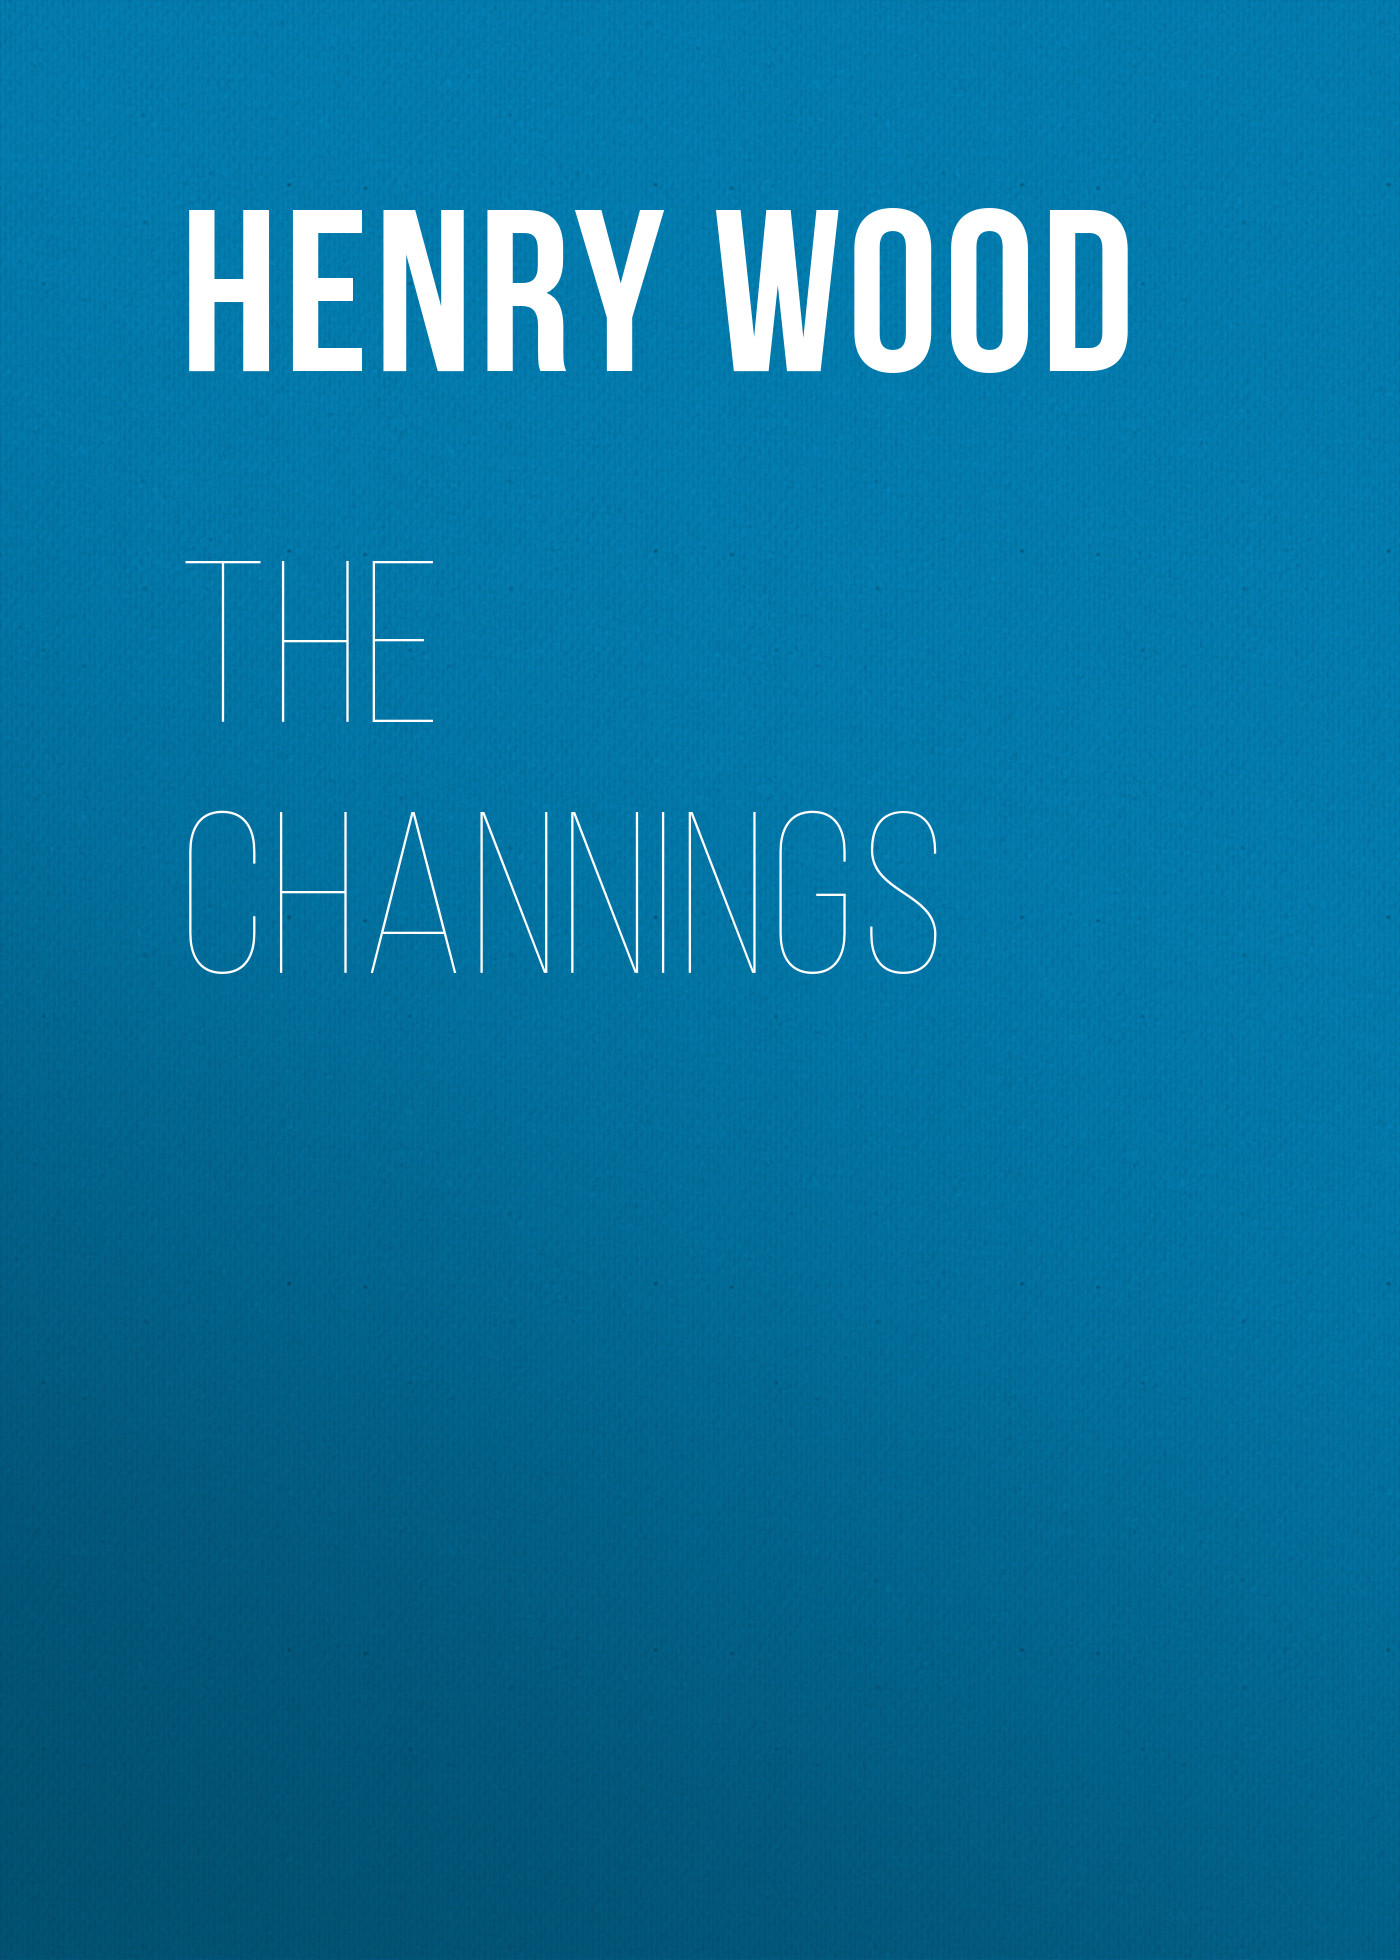 Книга The Channings из серии , созданная Henry Wood, может относится к жанру Зарубежная фантастика, Литература 19 века. Стоимость электронной книги The Channings с идентификатором 35007841 составляет 0 руб.